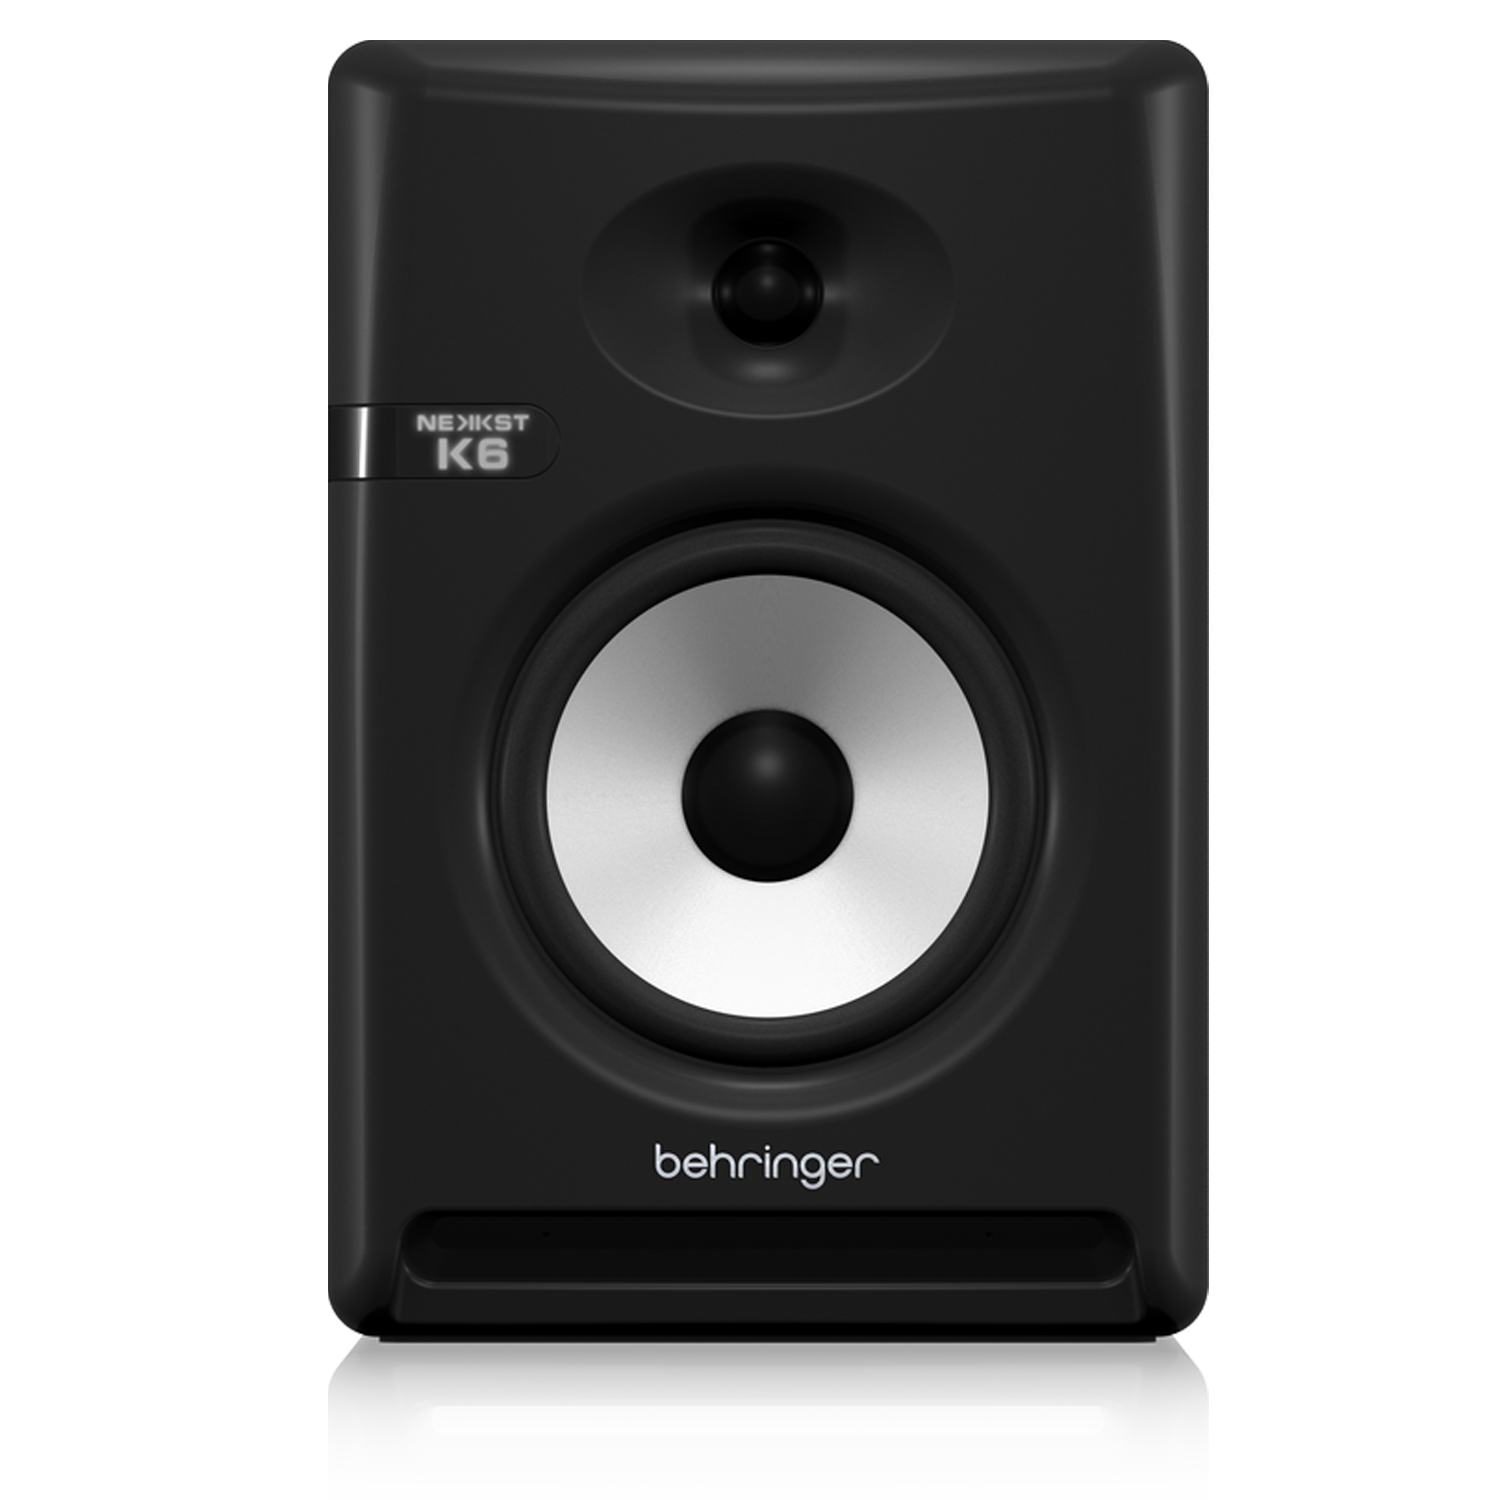 Behringer Nekkst K6 6.5 "Powered Studio Monitor (PAR)